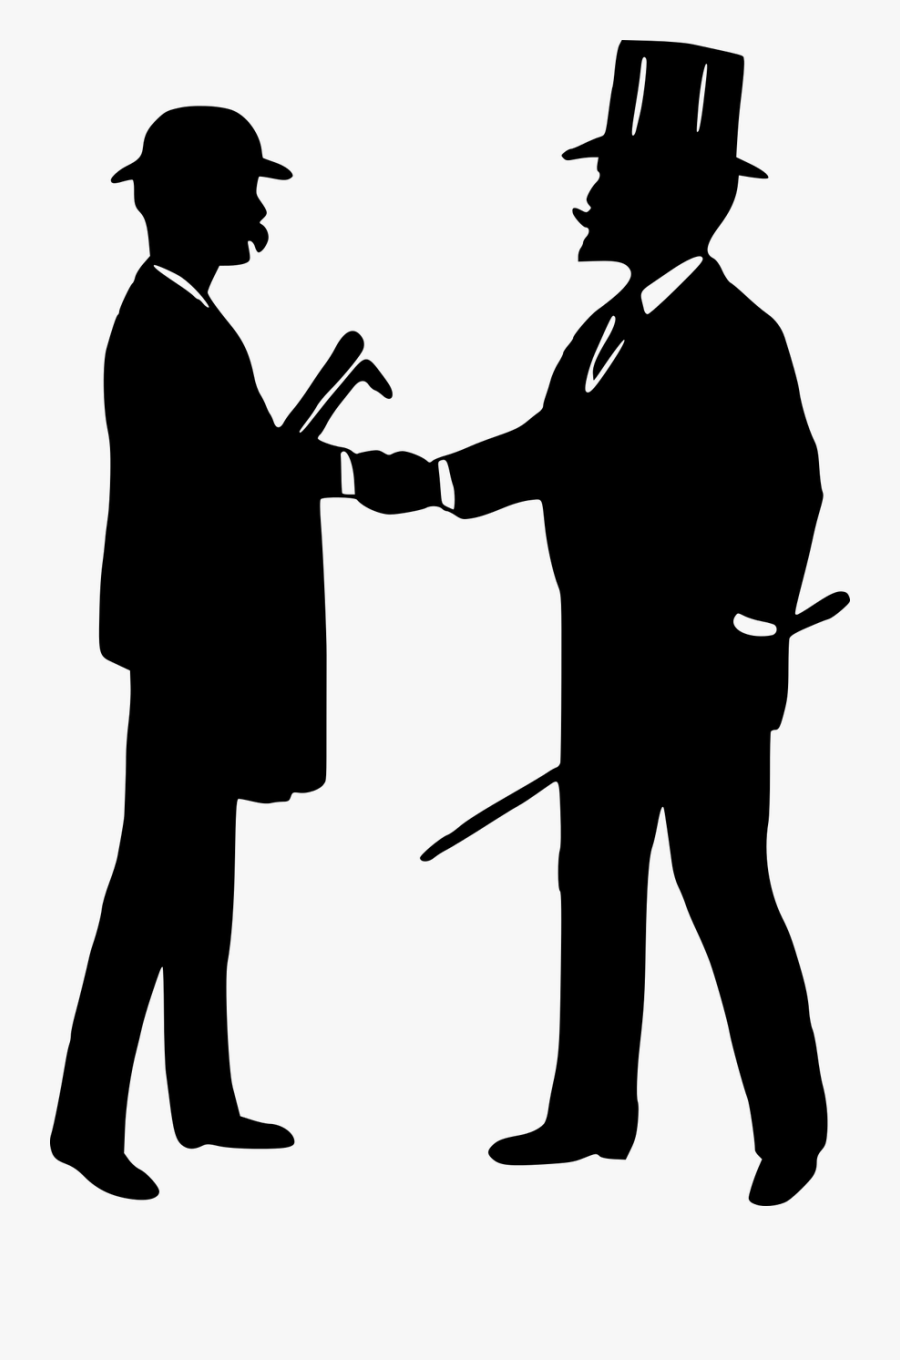 Gentleman Gentlemen Greeting Free Picture - Gentleman Shaking Hands, Transparent Clipart